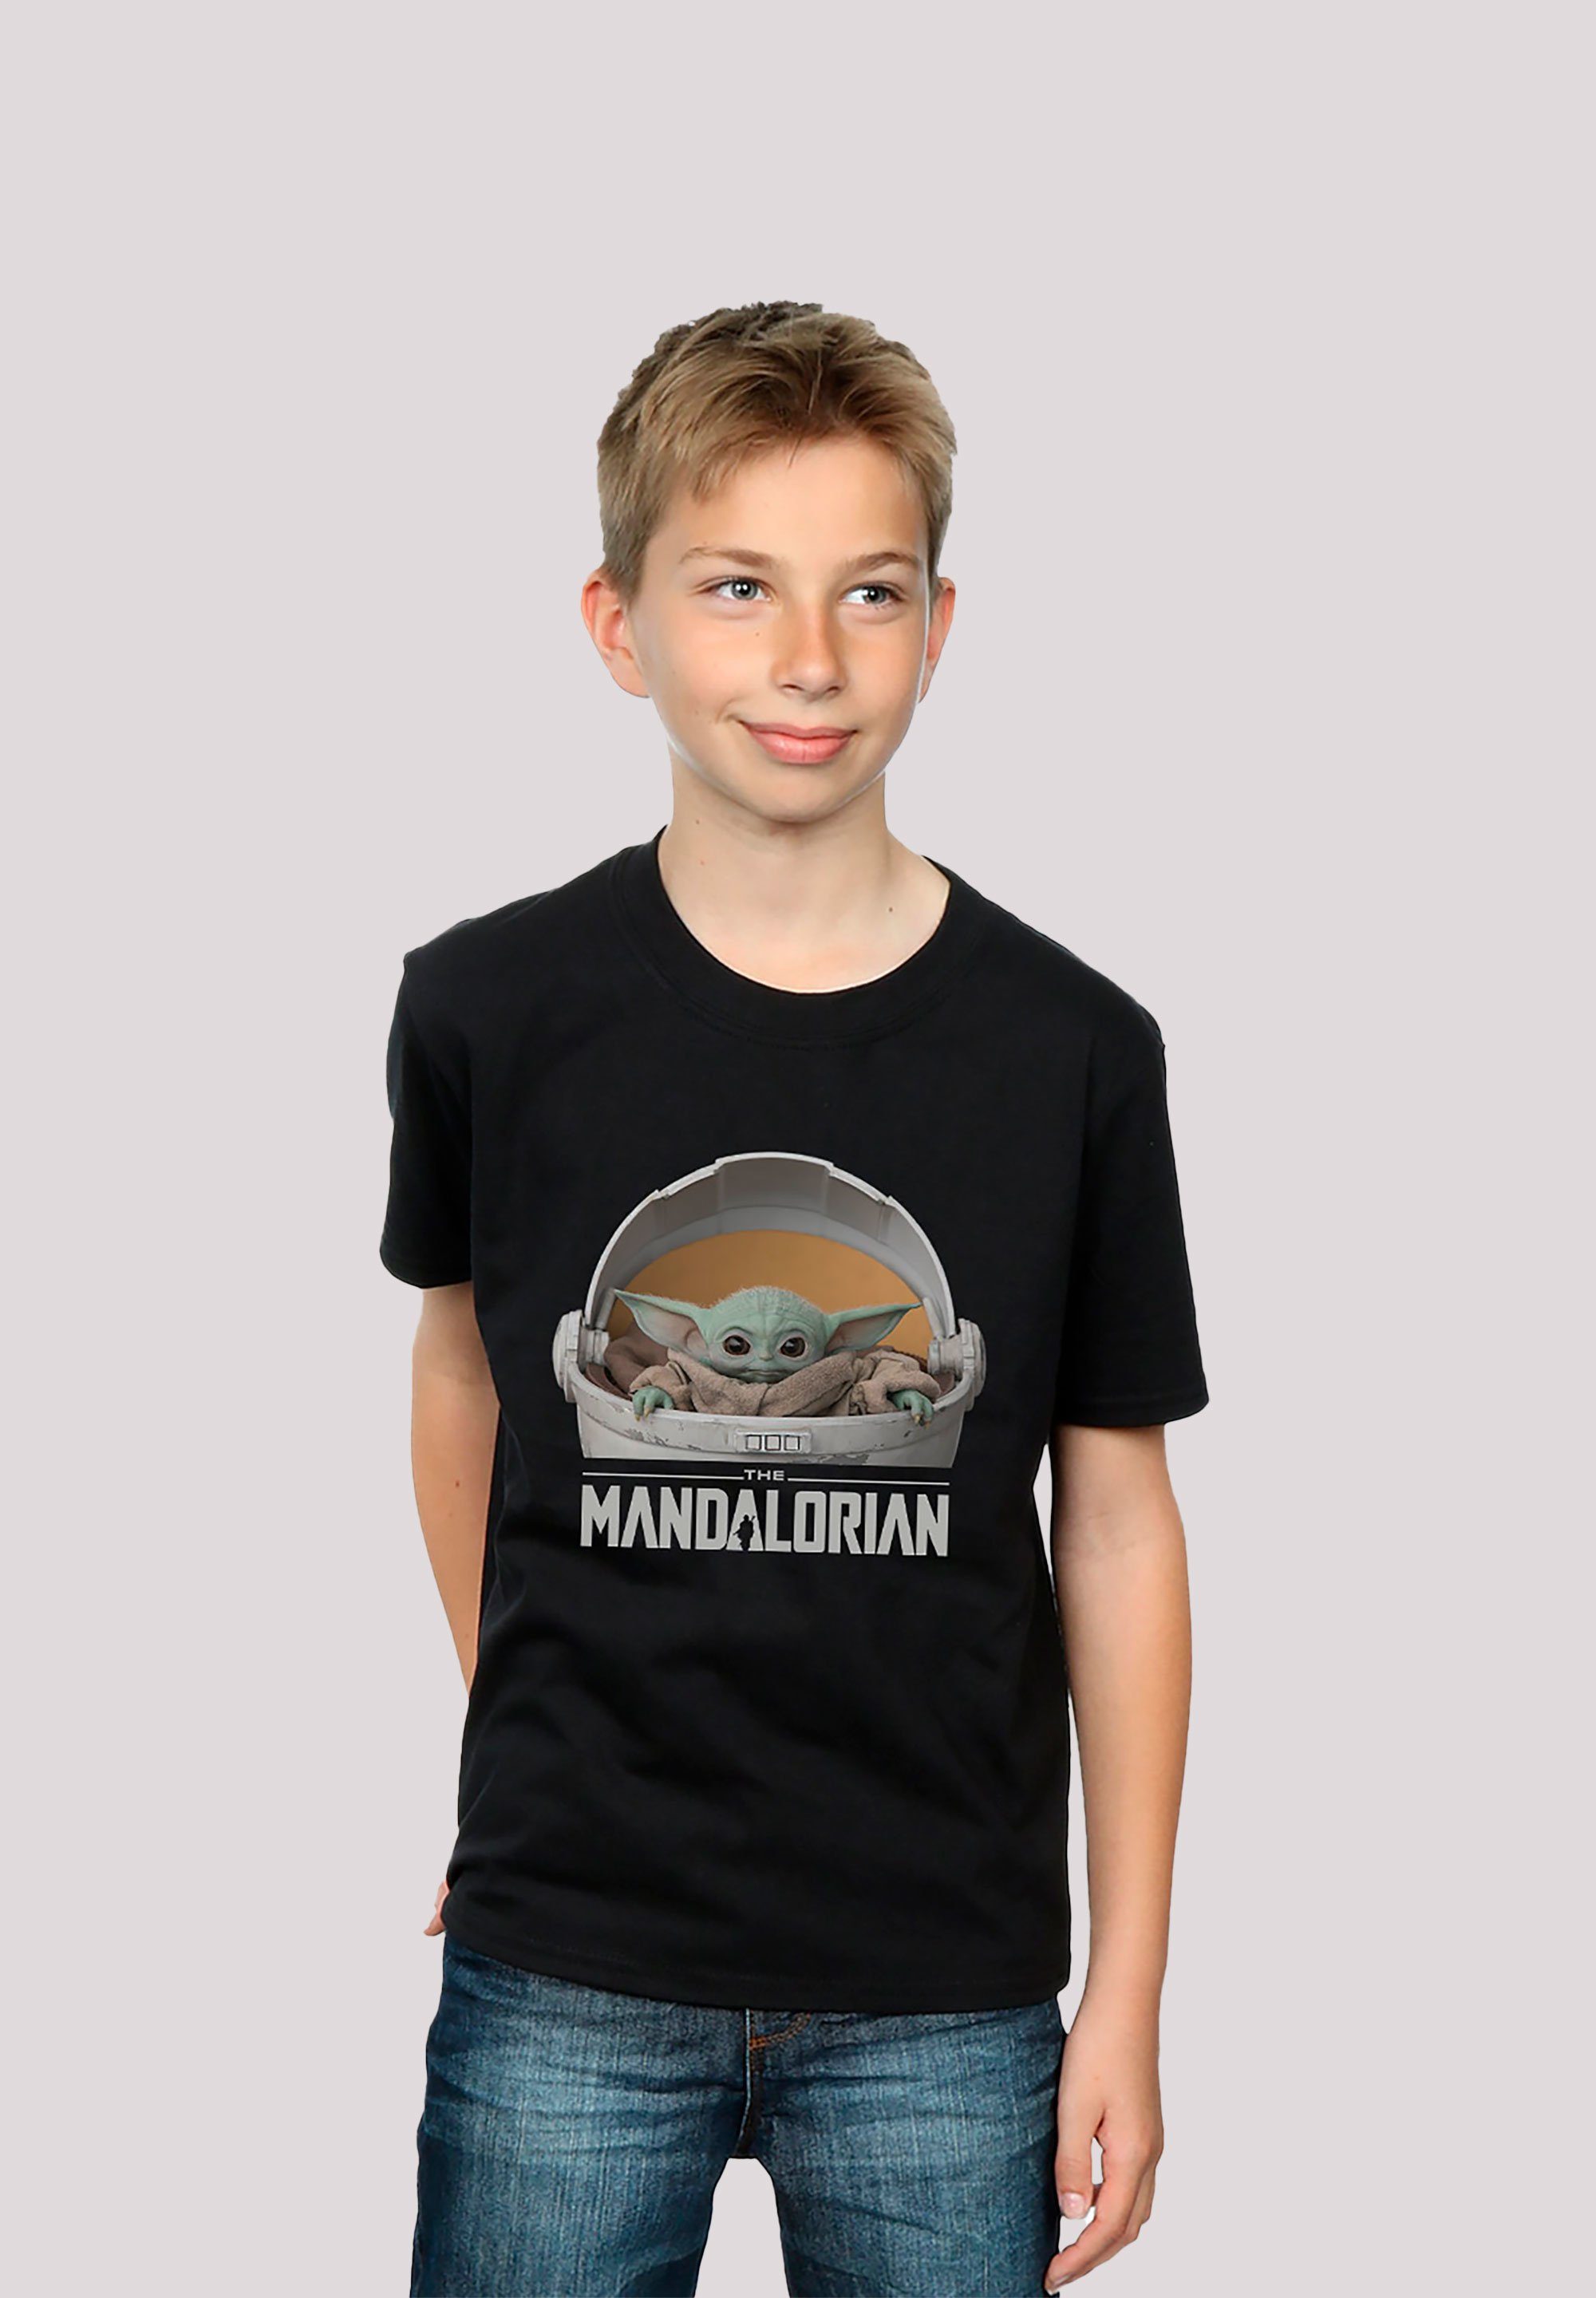 The Star Mandalorian T-Shirt Wars F4NT4STIC Mandalorian Yoda Star Pod The The Baby Wars Print, Child